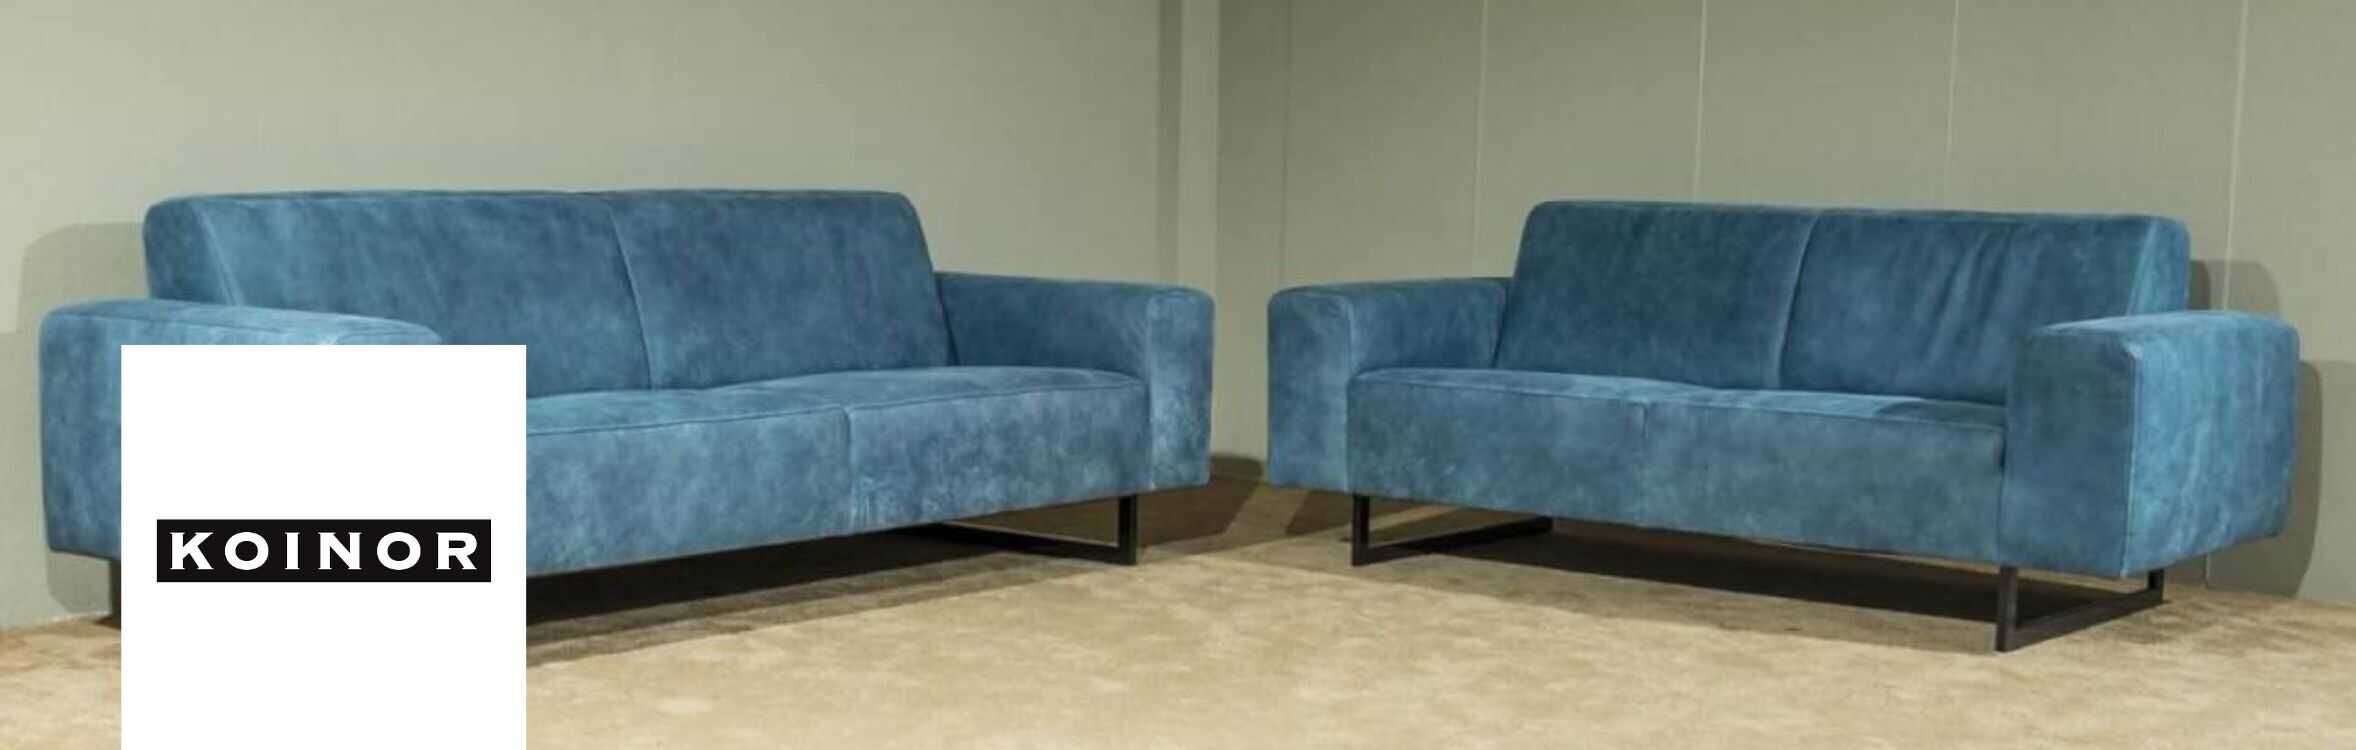 Möbel online von Koinor kaufen